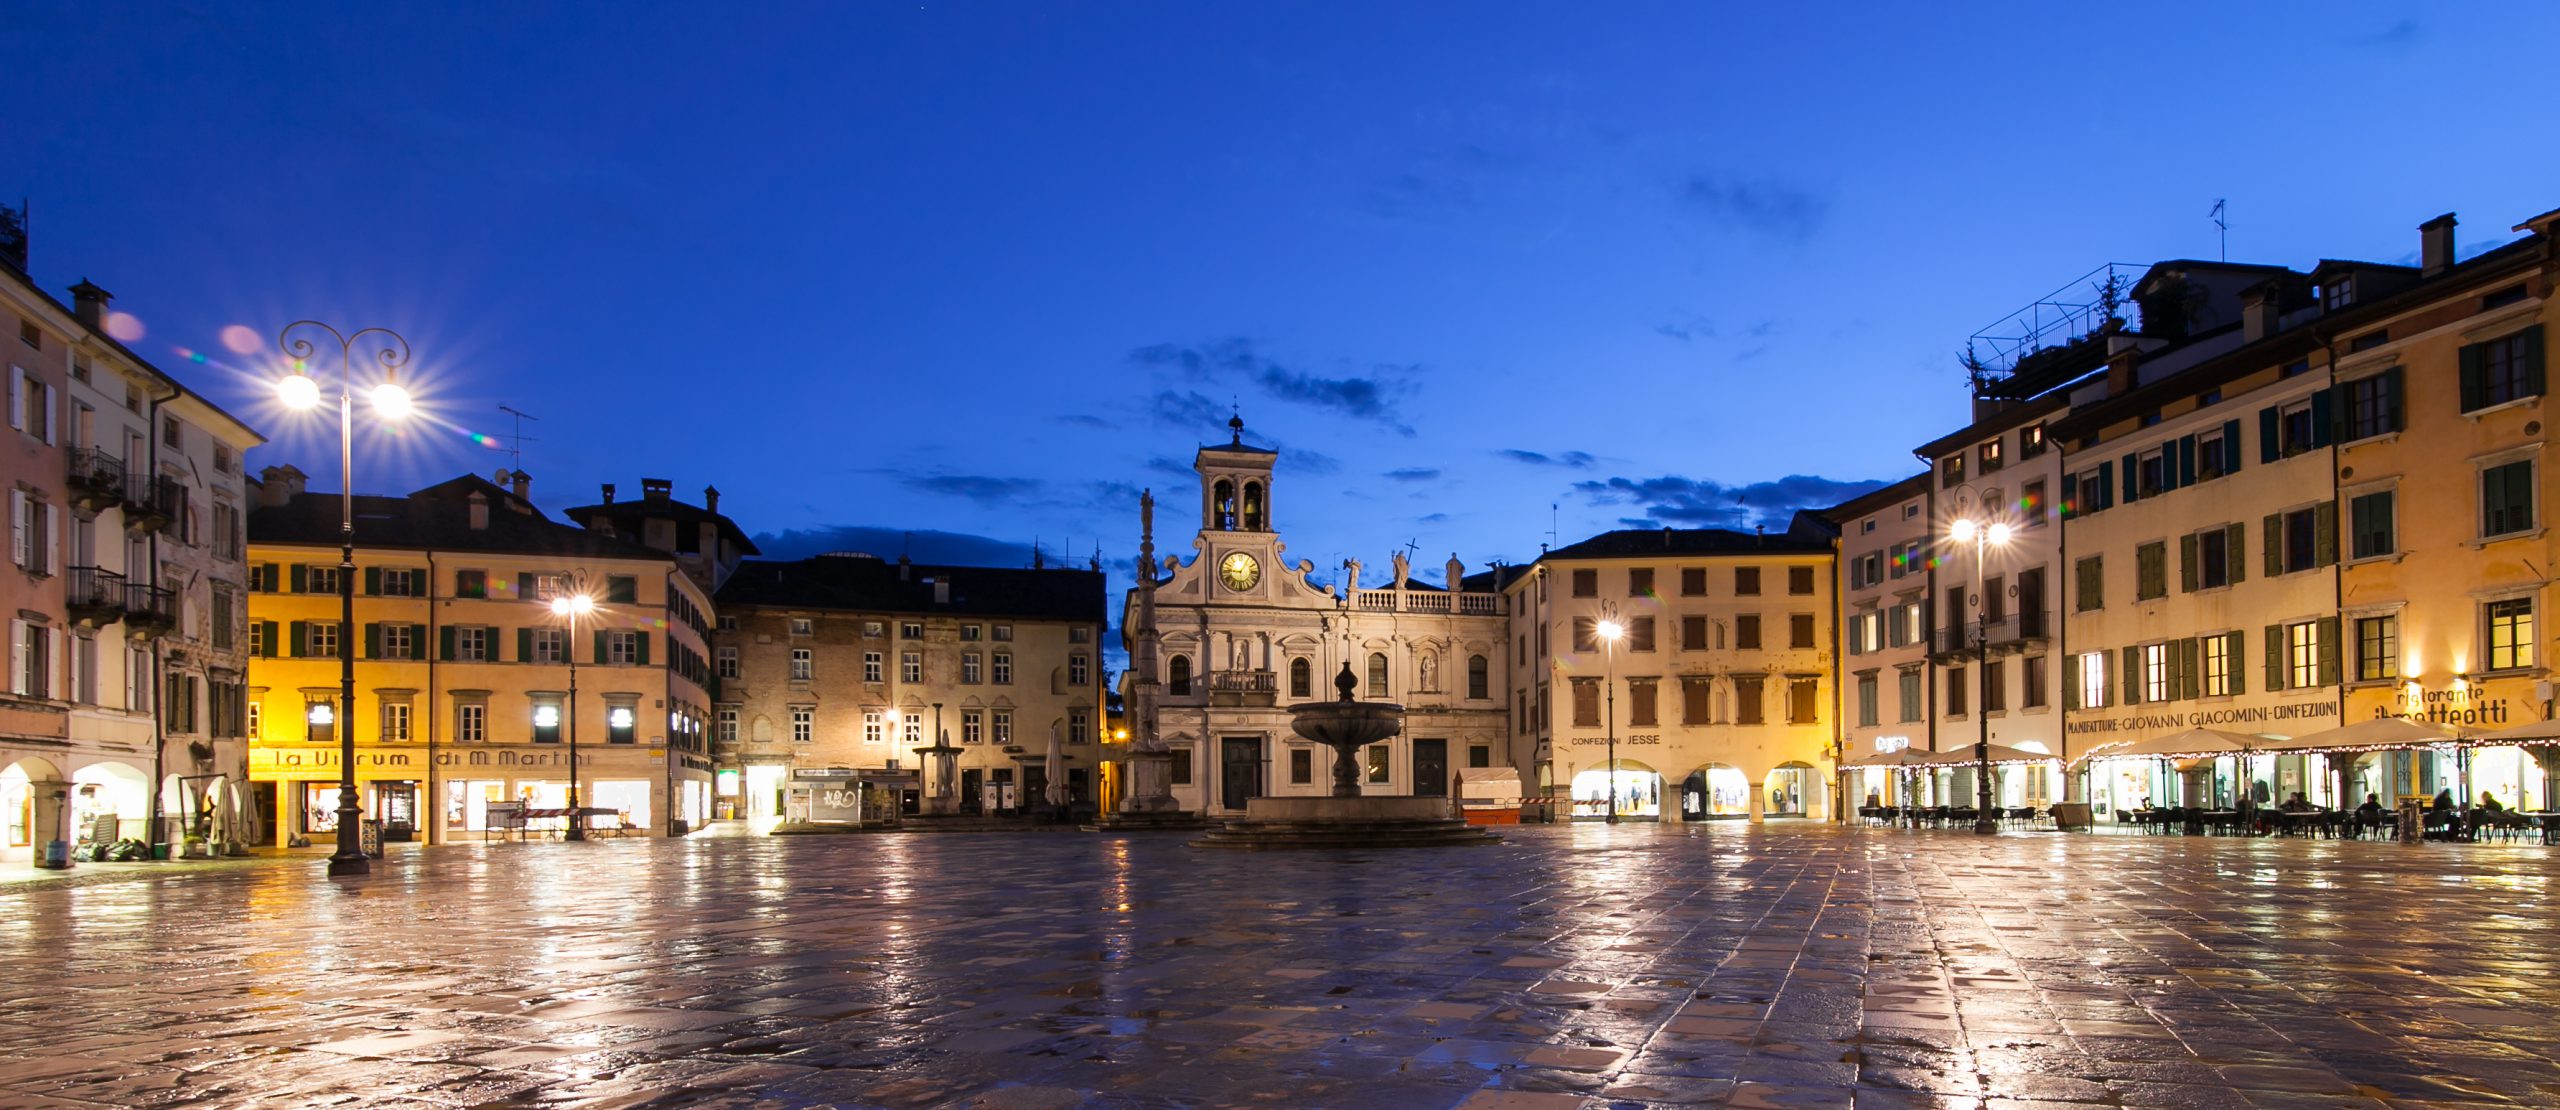 Udine mit dem Rad erkunden und bedeutende Bauten der späten Gotik und Renaissance bewundern